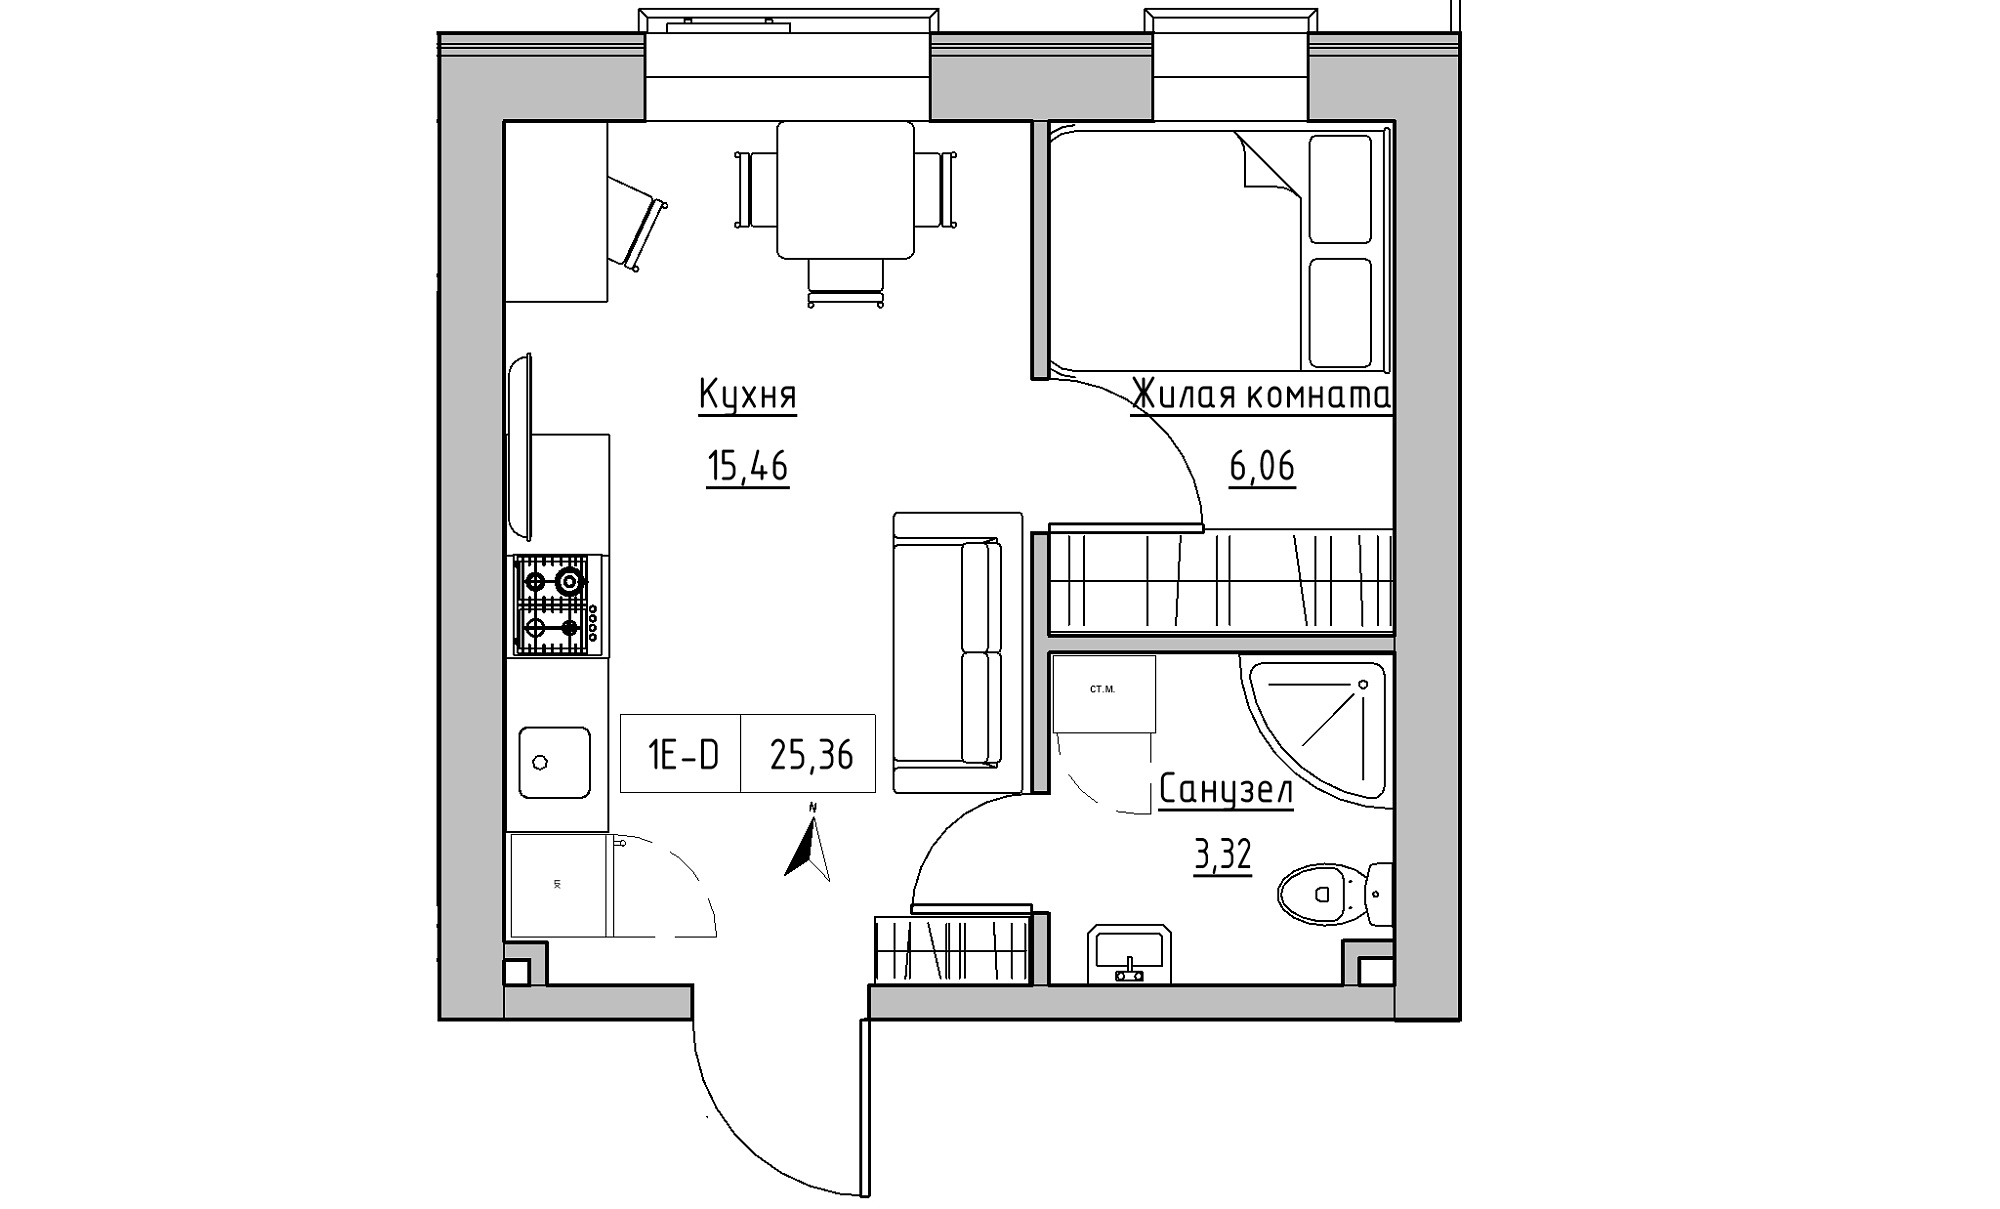 Планування 1-к квартира площею 25.36м2, KS-016-03/0002.